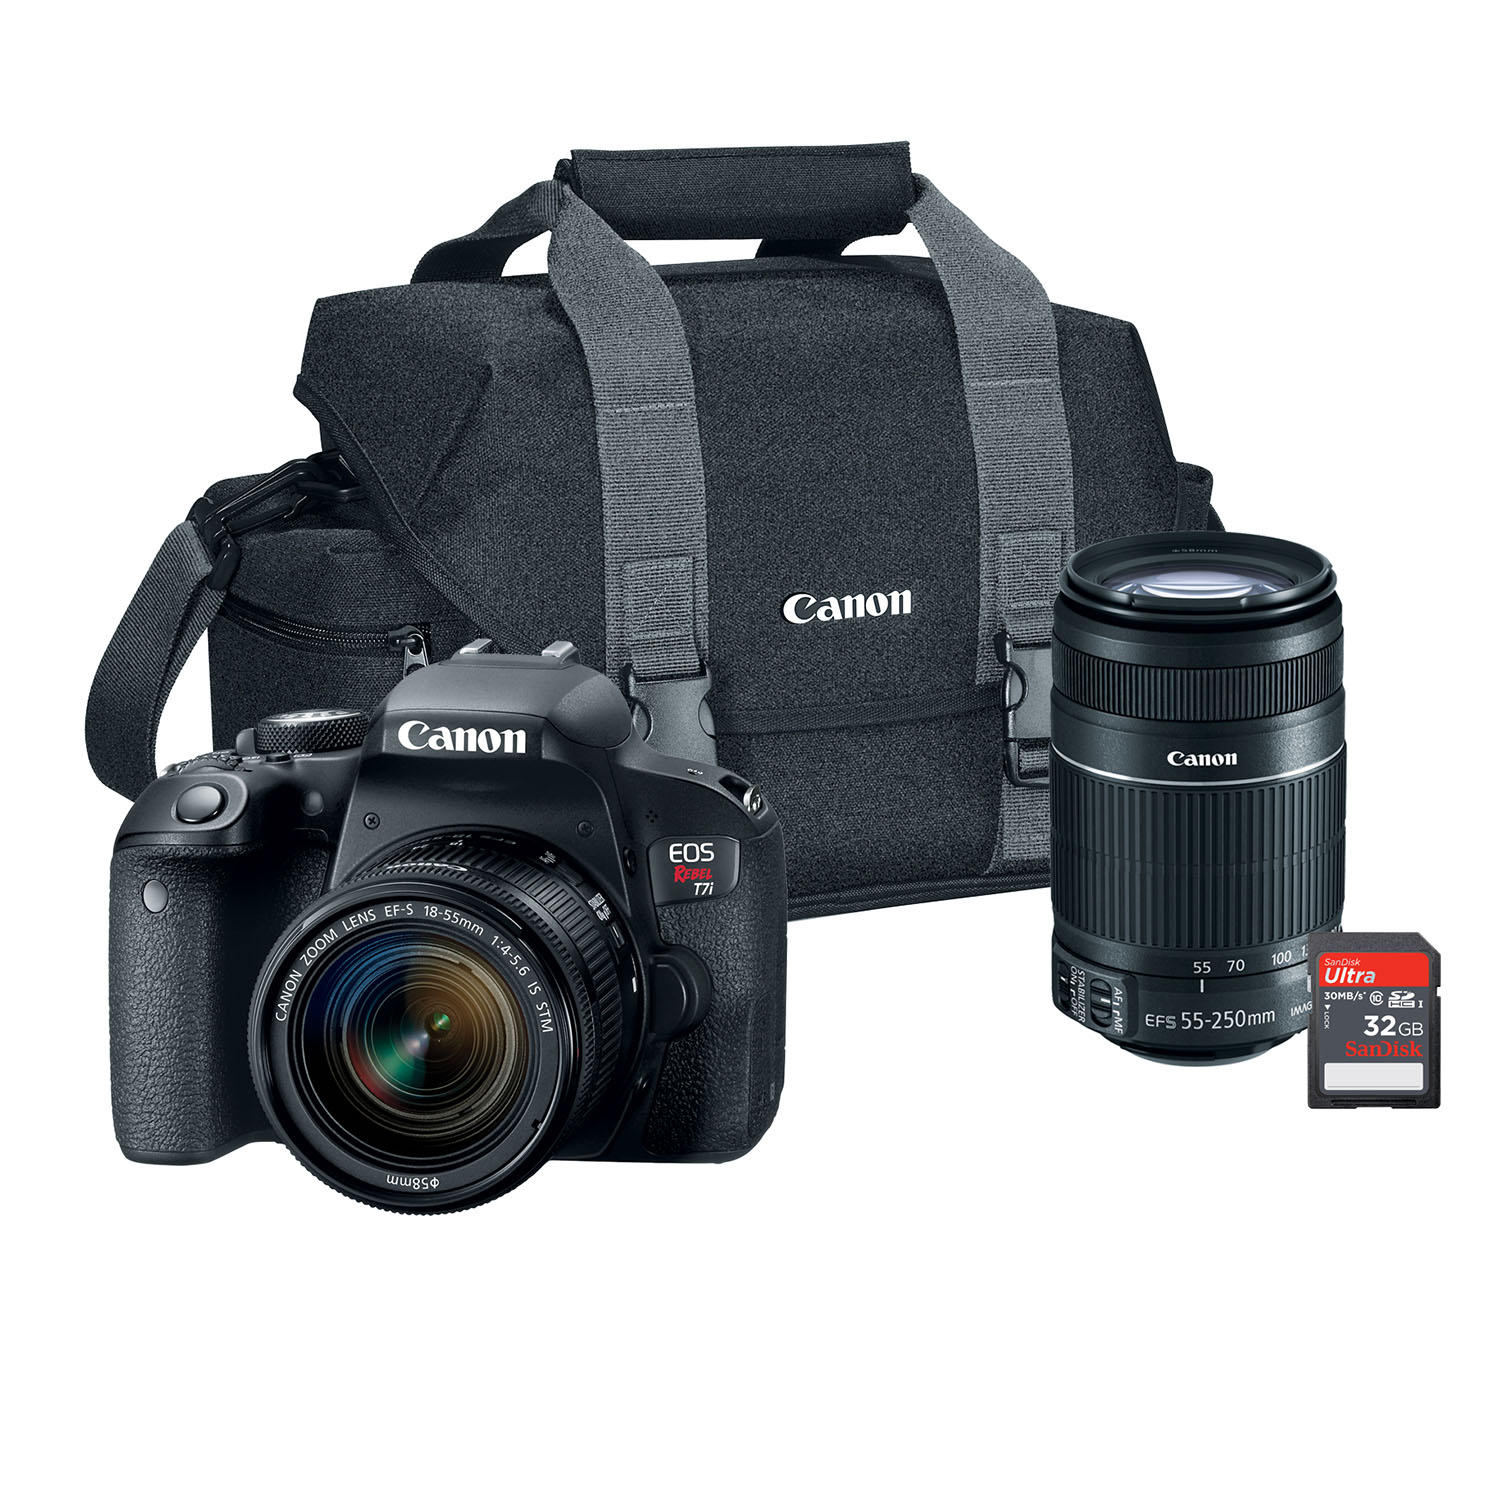 Canon EOS Rebel T7i 24.2MP Digital SLR Camera Bundle with EF-S 18-55mm STM Lens, 55-250mm Lens, 32GB SD Card, Camera Bag